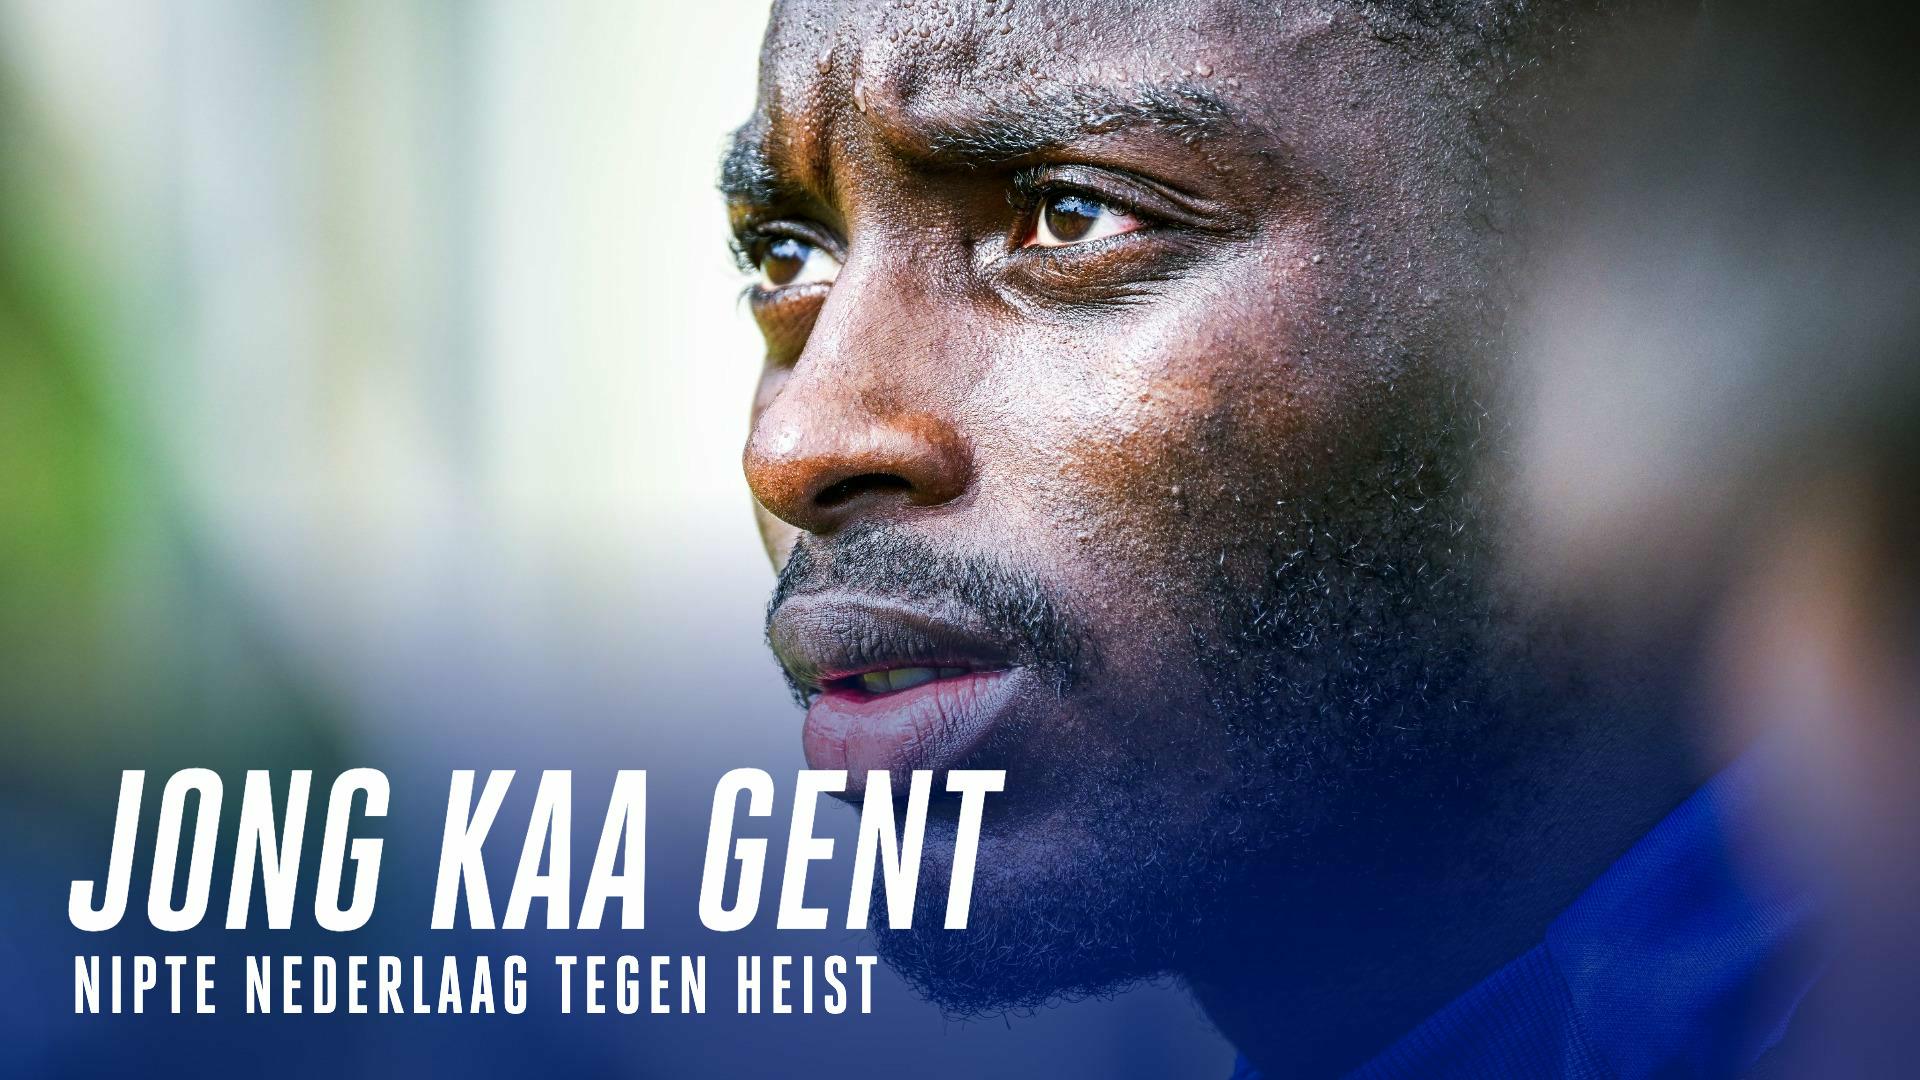 Jong KAA Gent slikt zure nederlaag in extra tijd